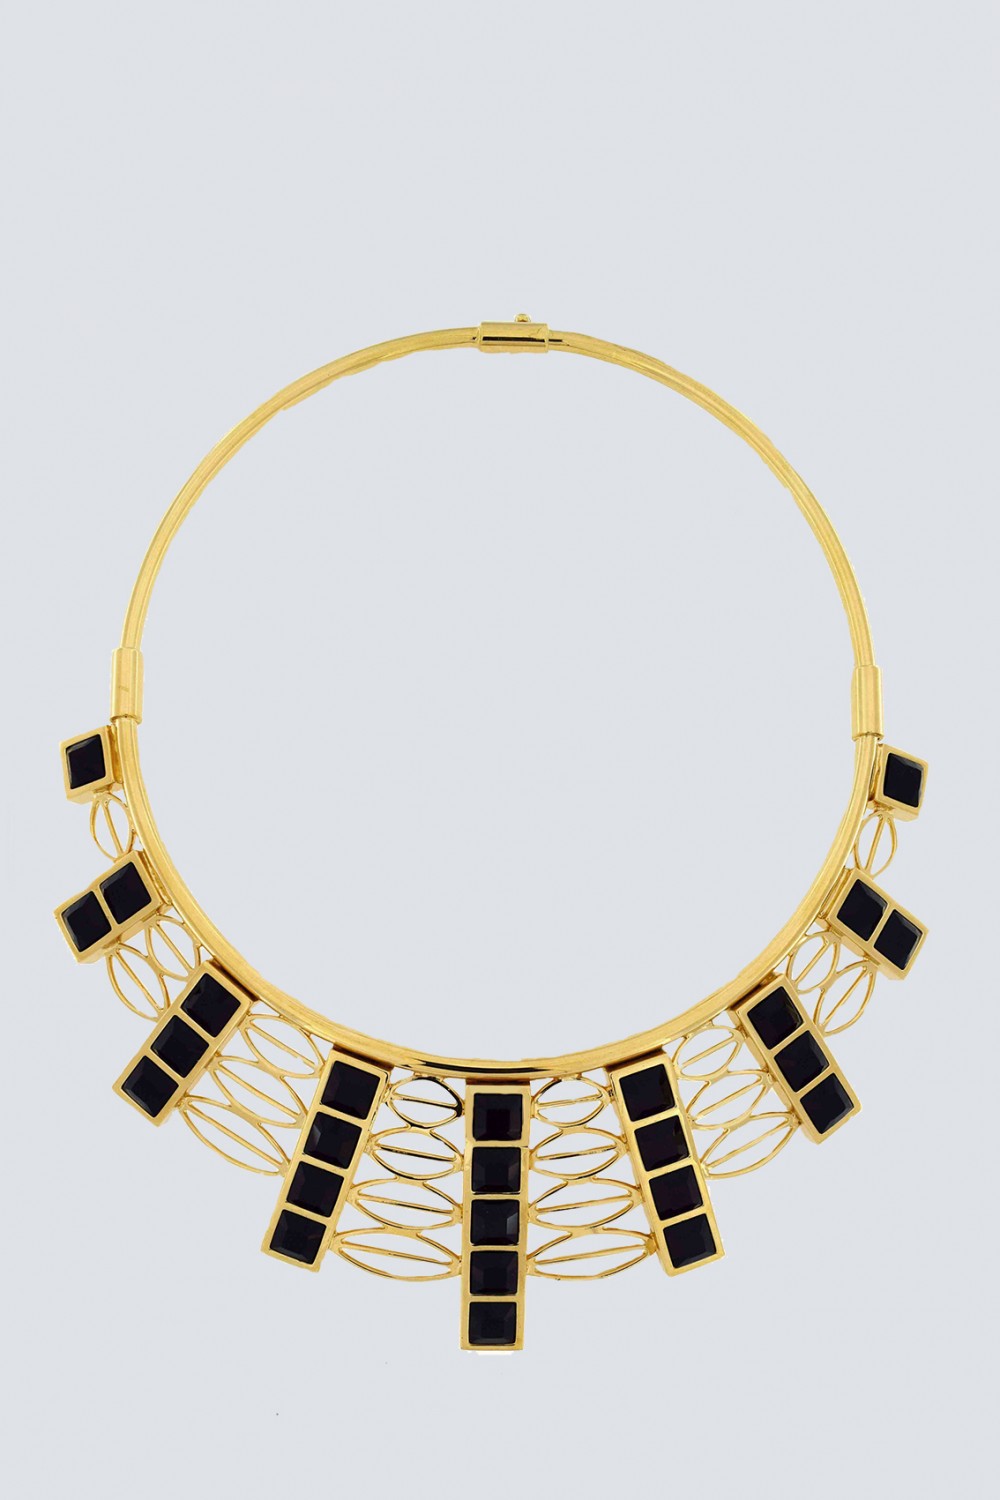 Vendita Abbigliamento Usato FIrmato - Collana in oro giallo e cristalli Swarovski neri - Natama - Drexcode -2